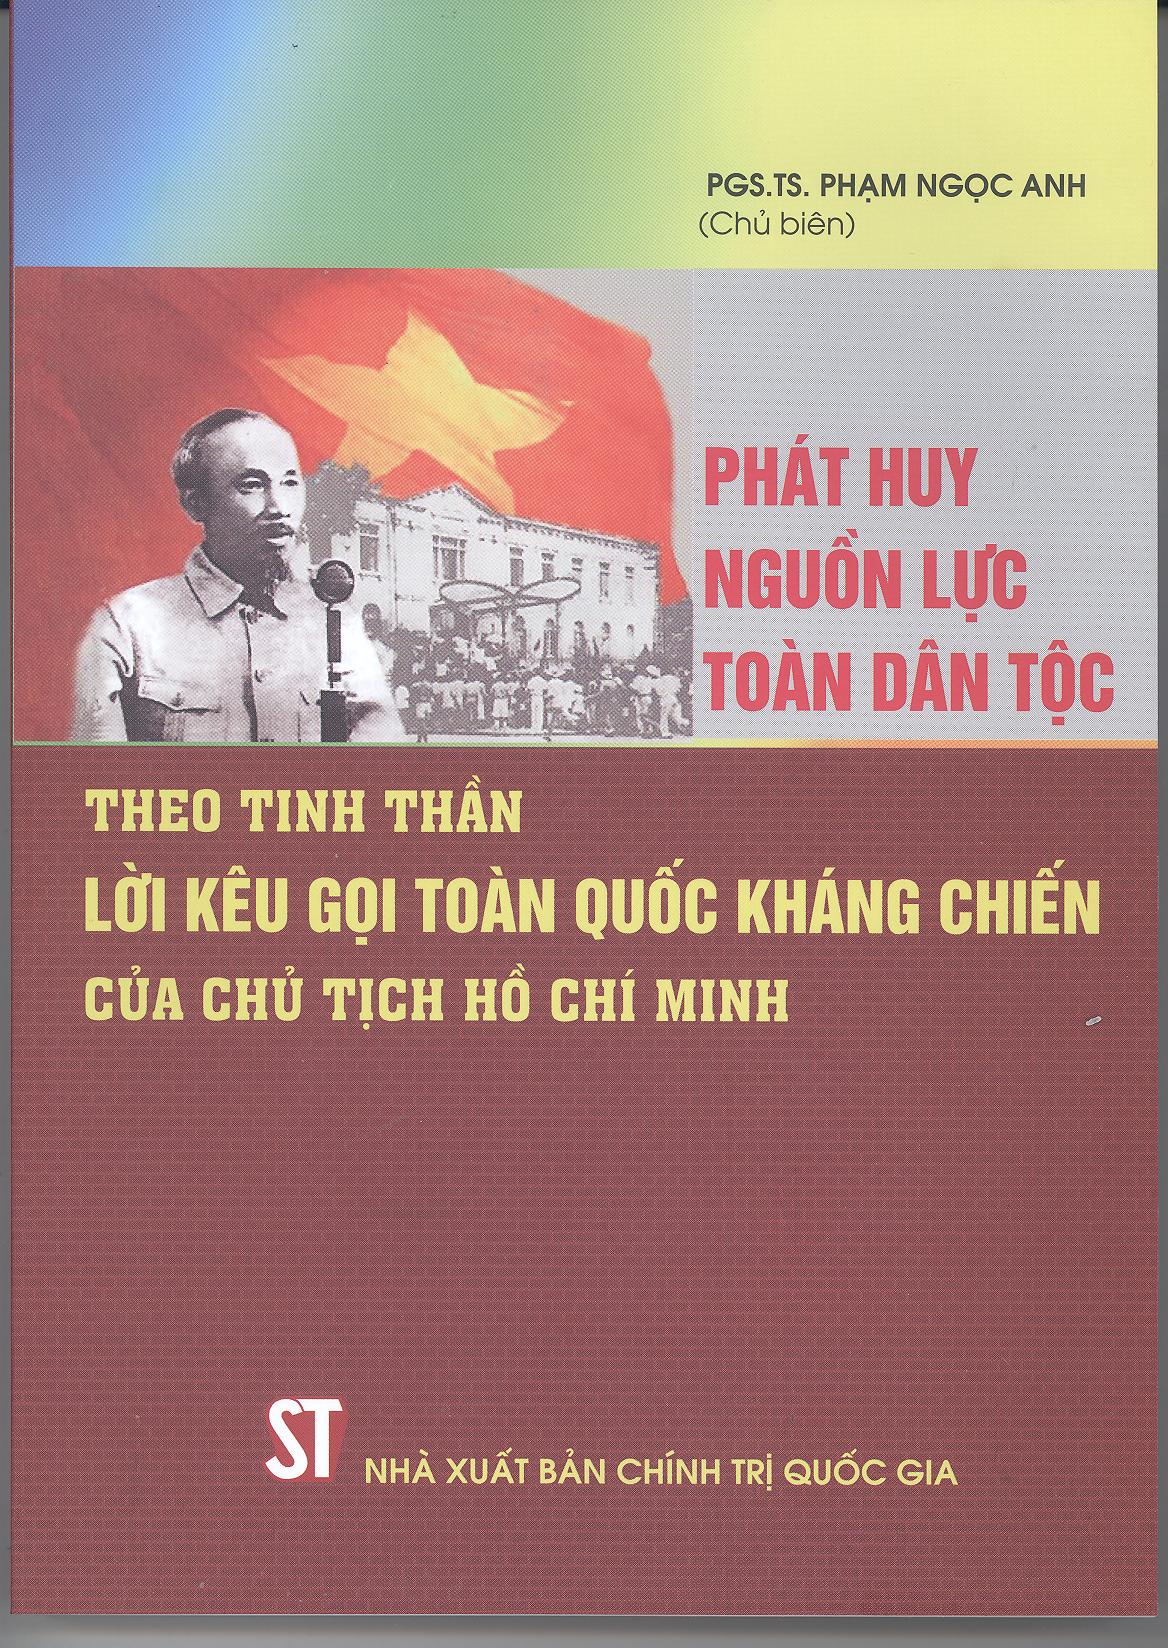 Phát huy nguồn lực toàn dân tộc theo tinh thần Lời kêu gọi toàn quốc kháng chiến của Chủ tịch Hồ Chí Minh